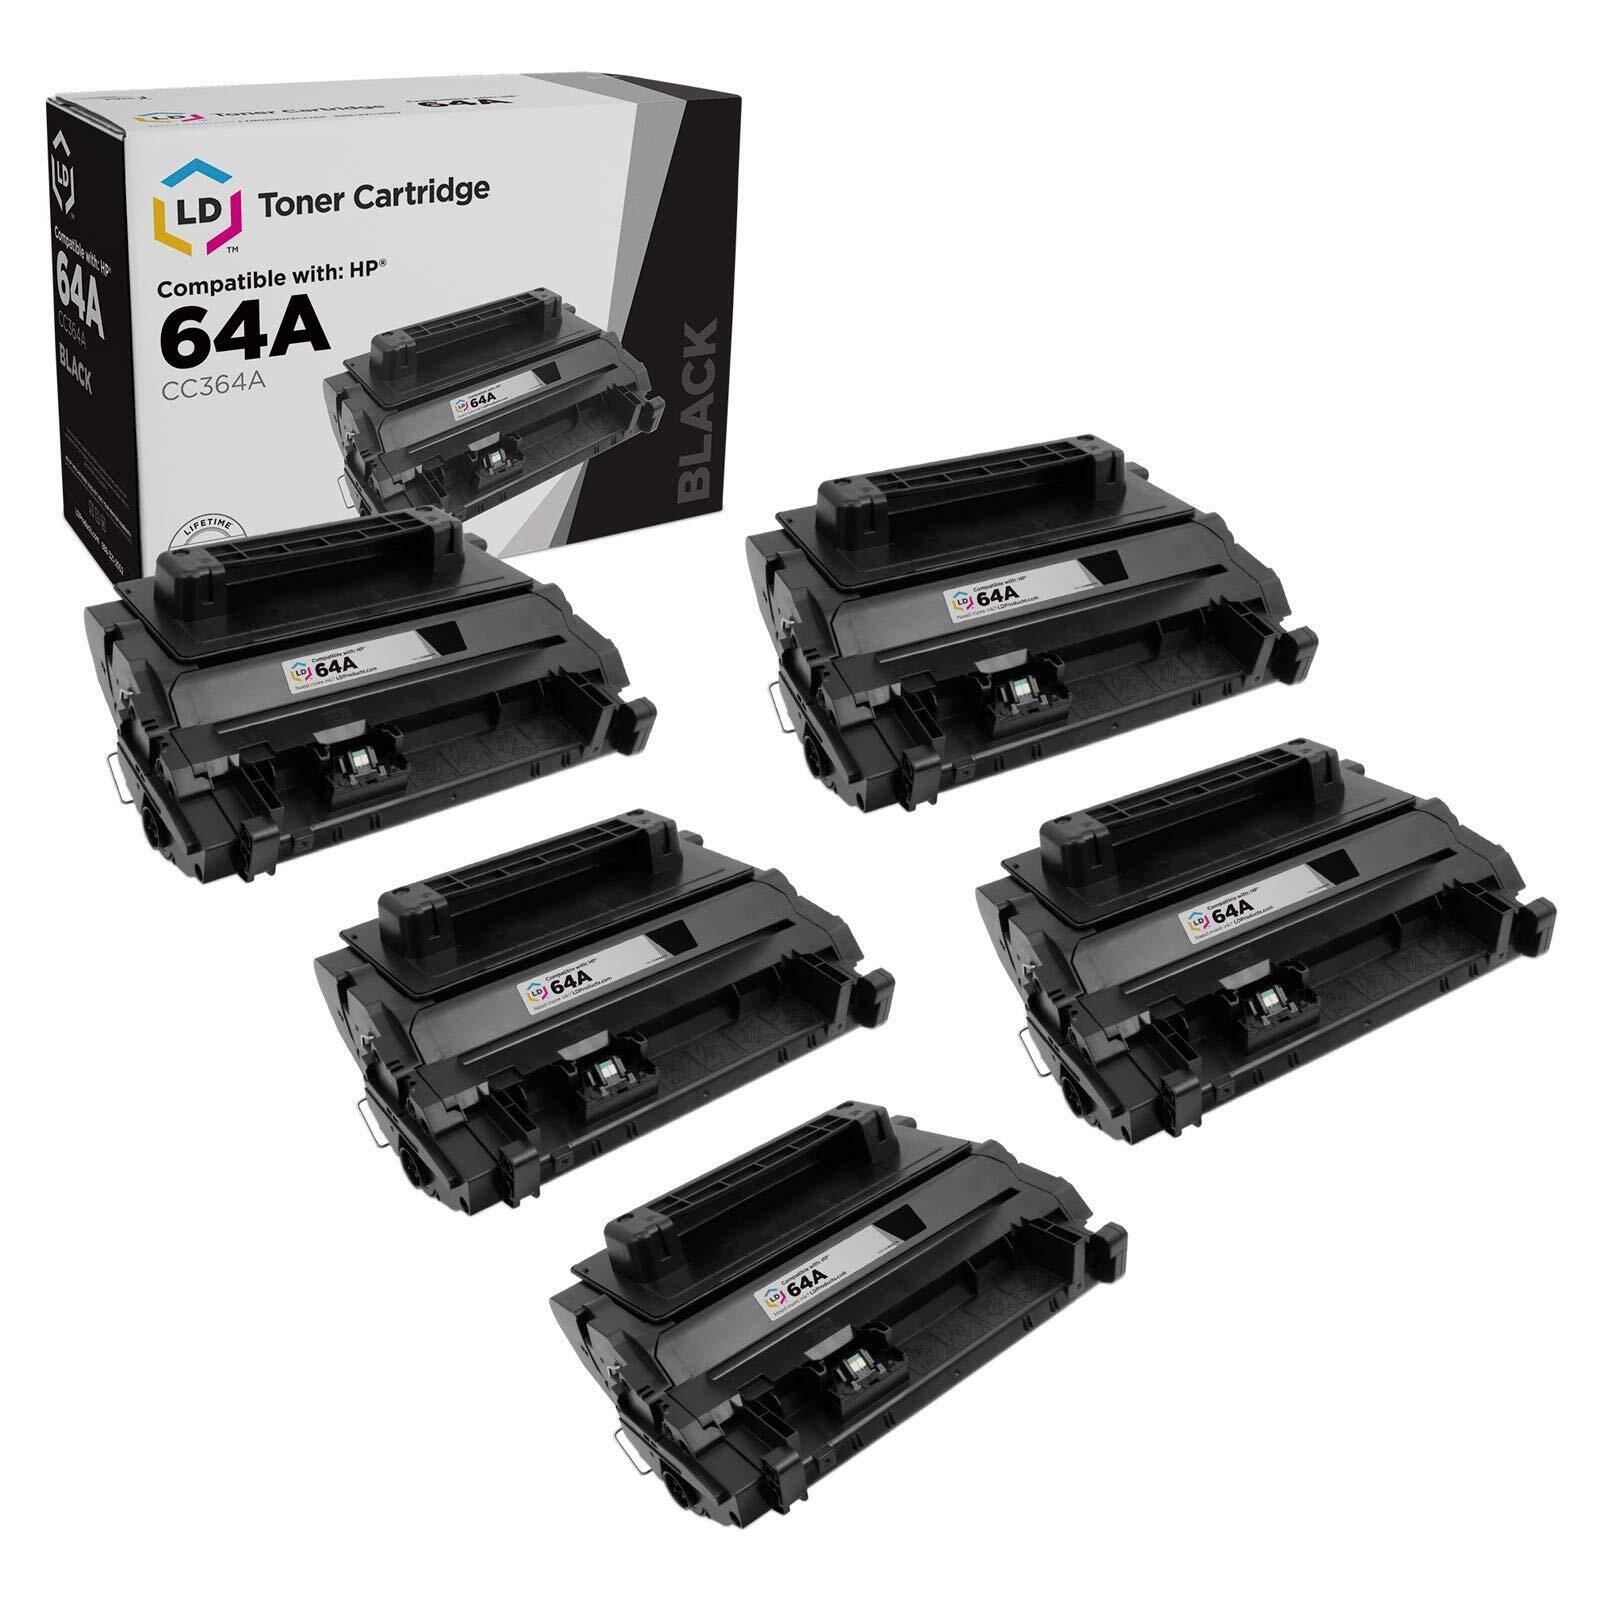 LD 5PK CC364A 64A SY Black Laser Toner Cartridge for HP LaserJet P4015tn P4515tn